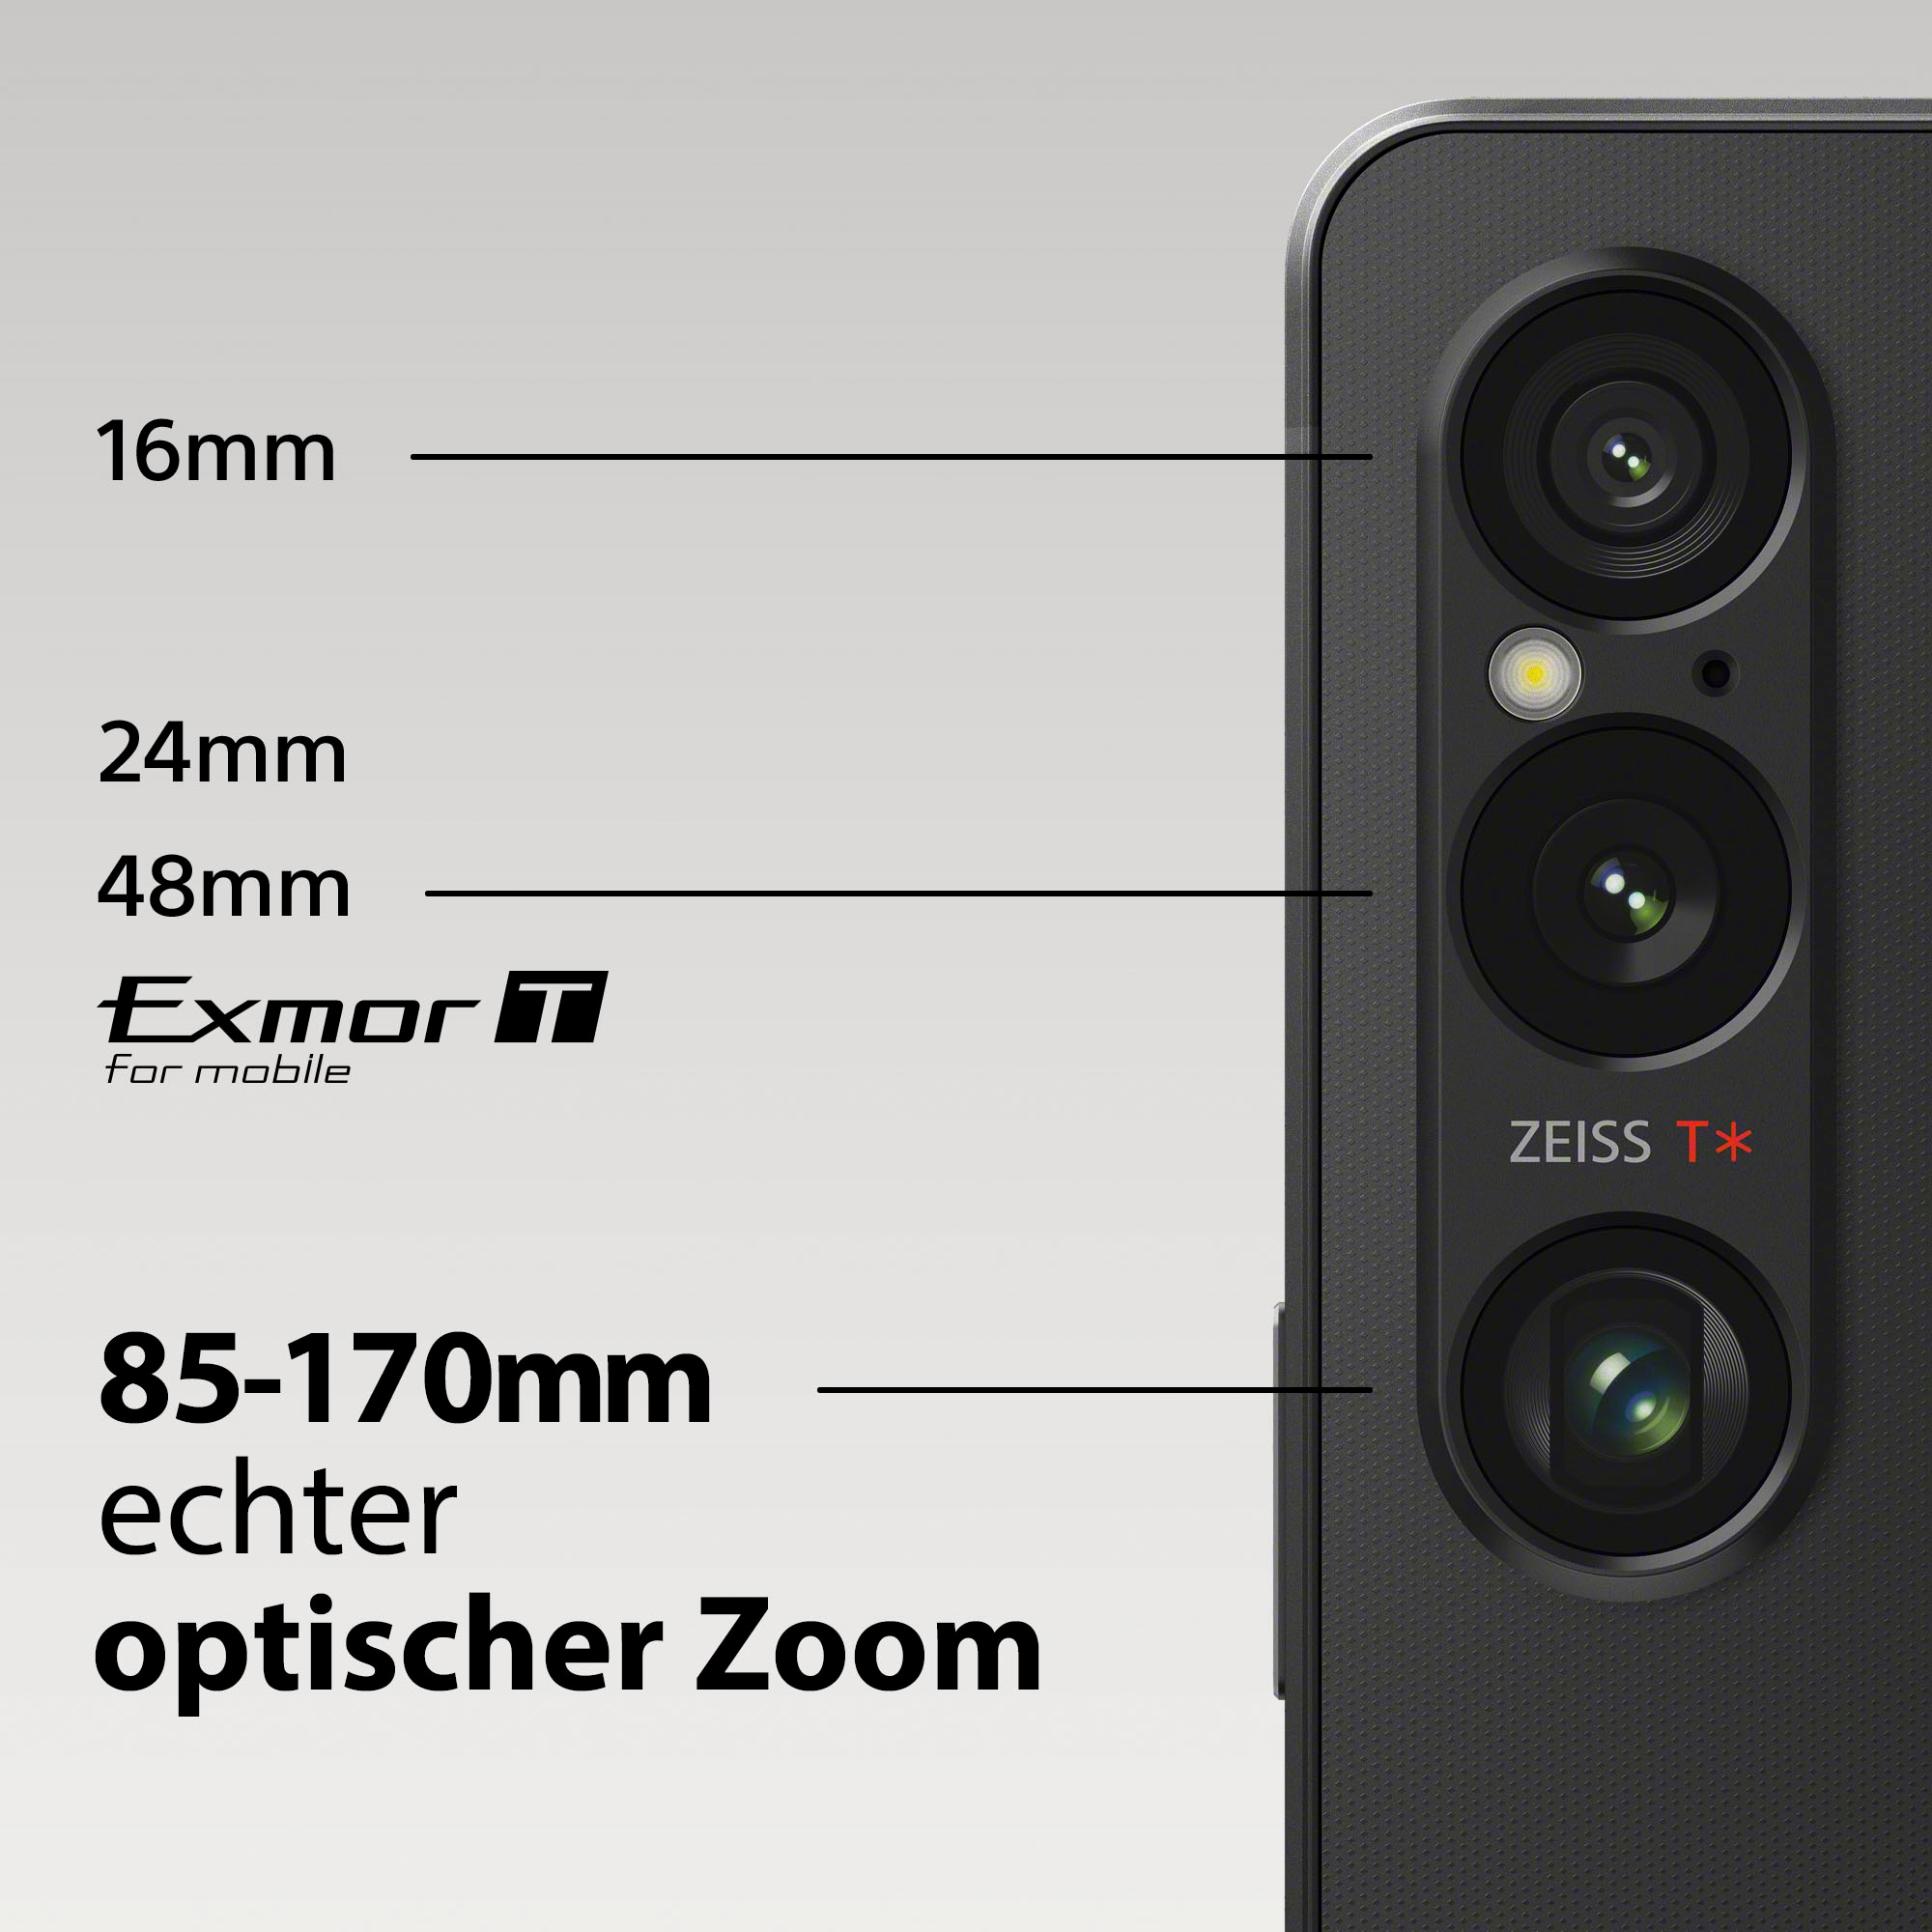 Sony Smartphone »Xperia 1 VI«, Platin-Silber, 16,5 cm/6,5 Zoll, 256 GB Speicherplatz, 52 MP Kamera